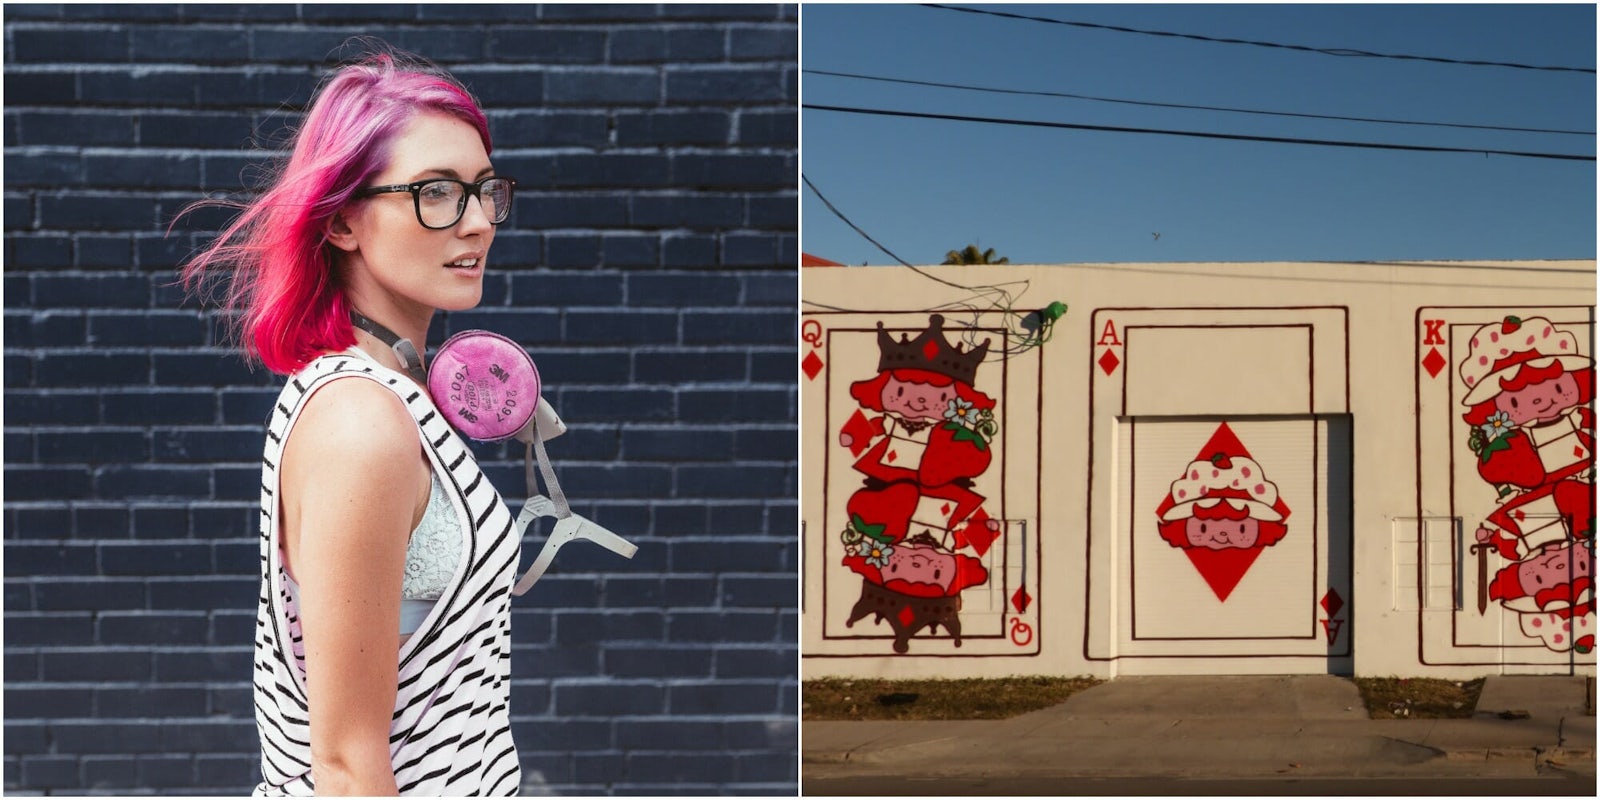 meg zany street art strawberry shortcake feminist